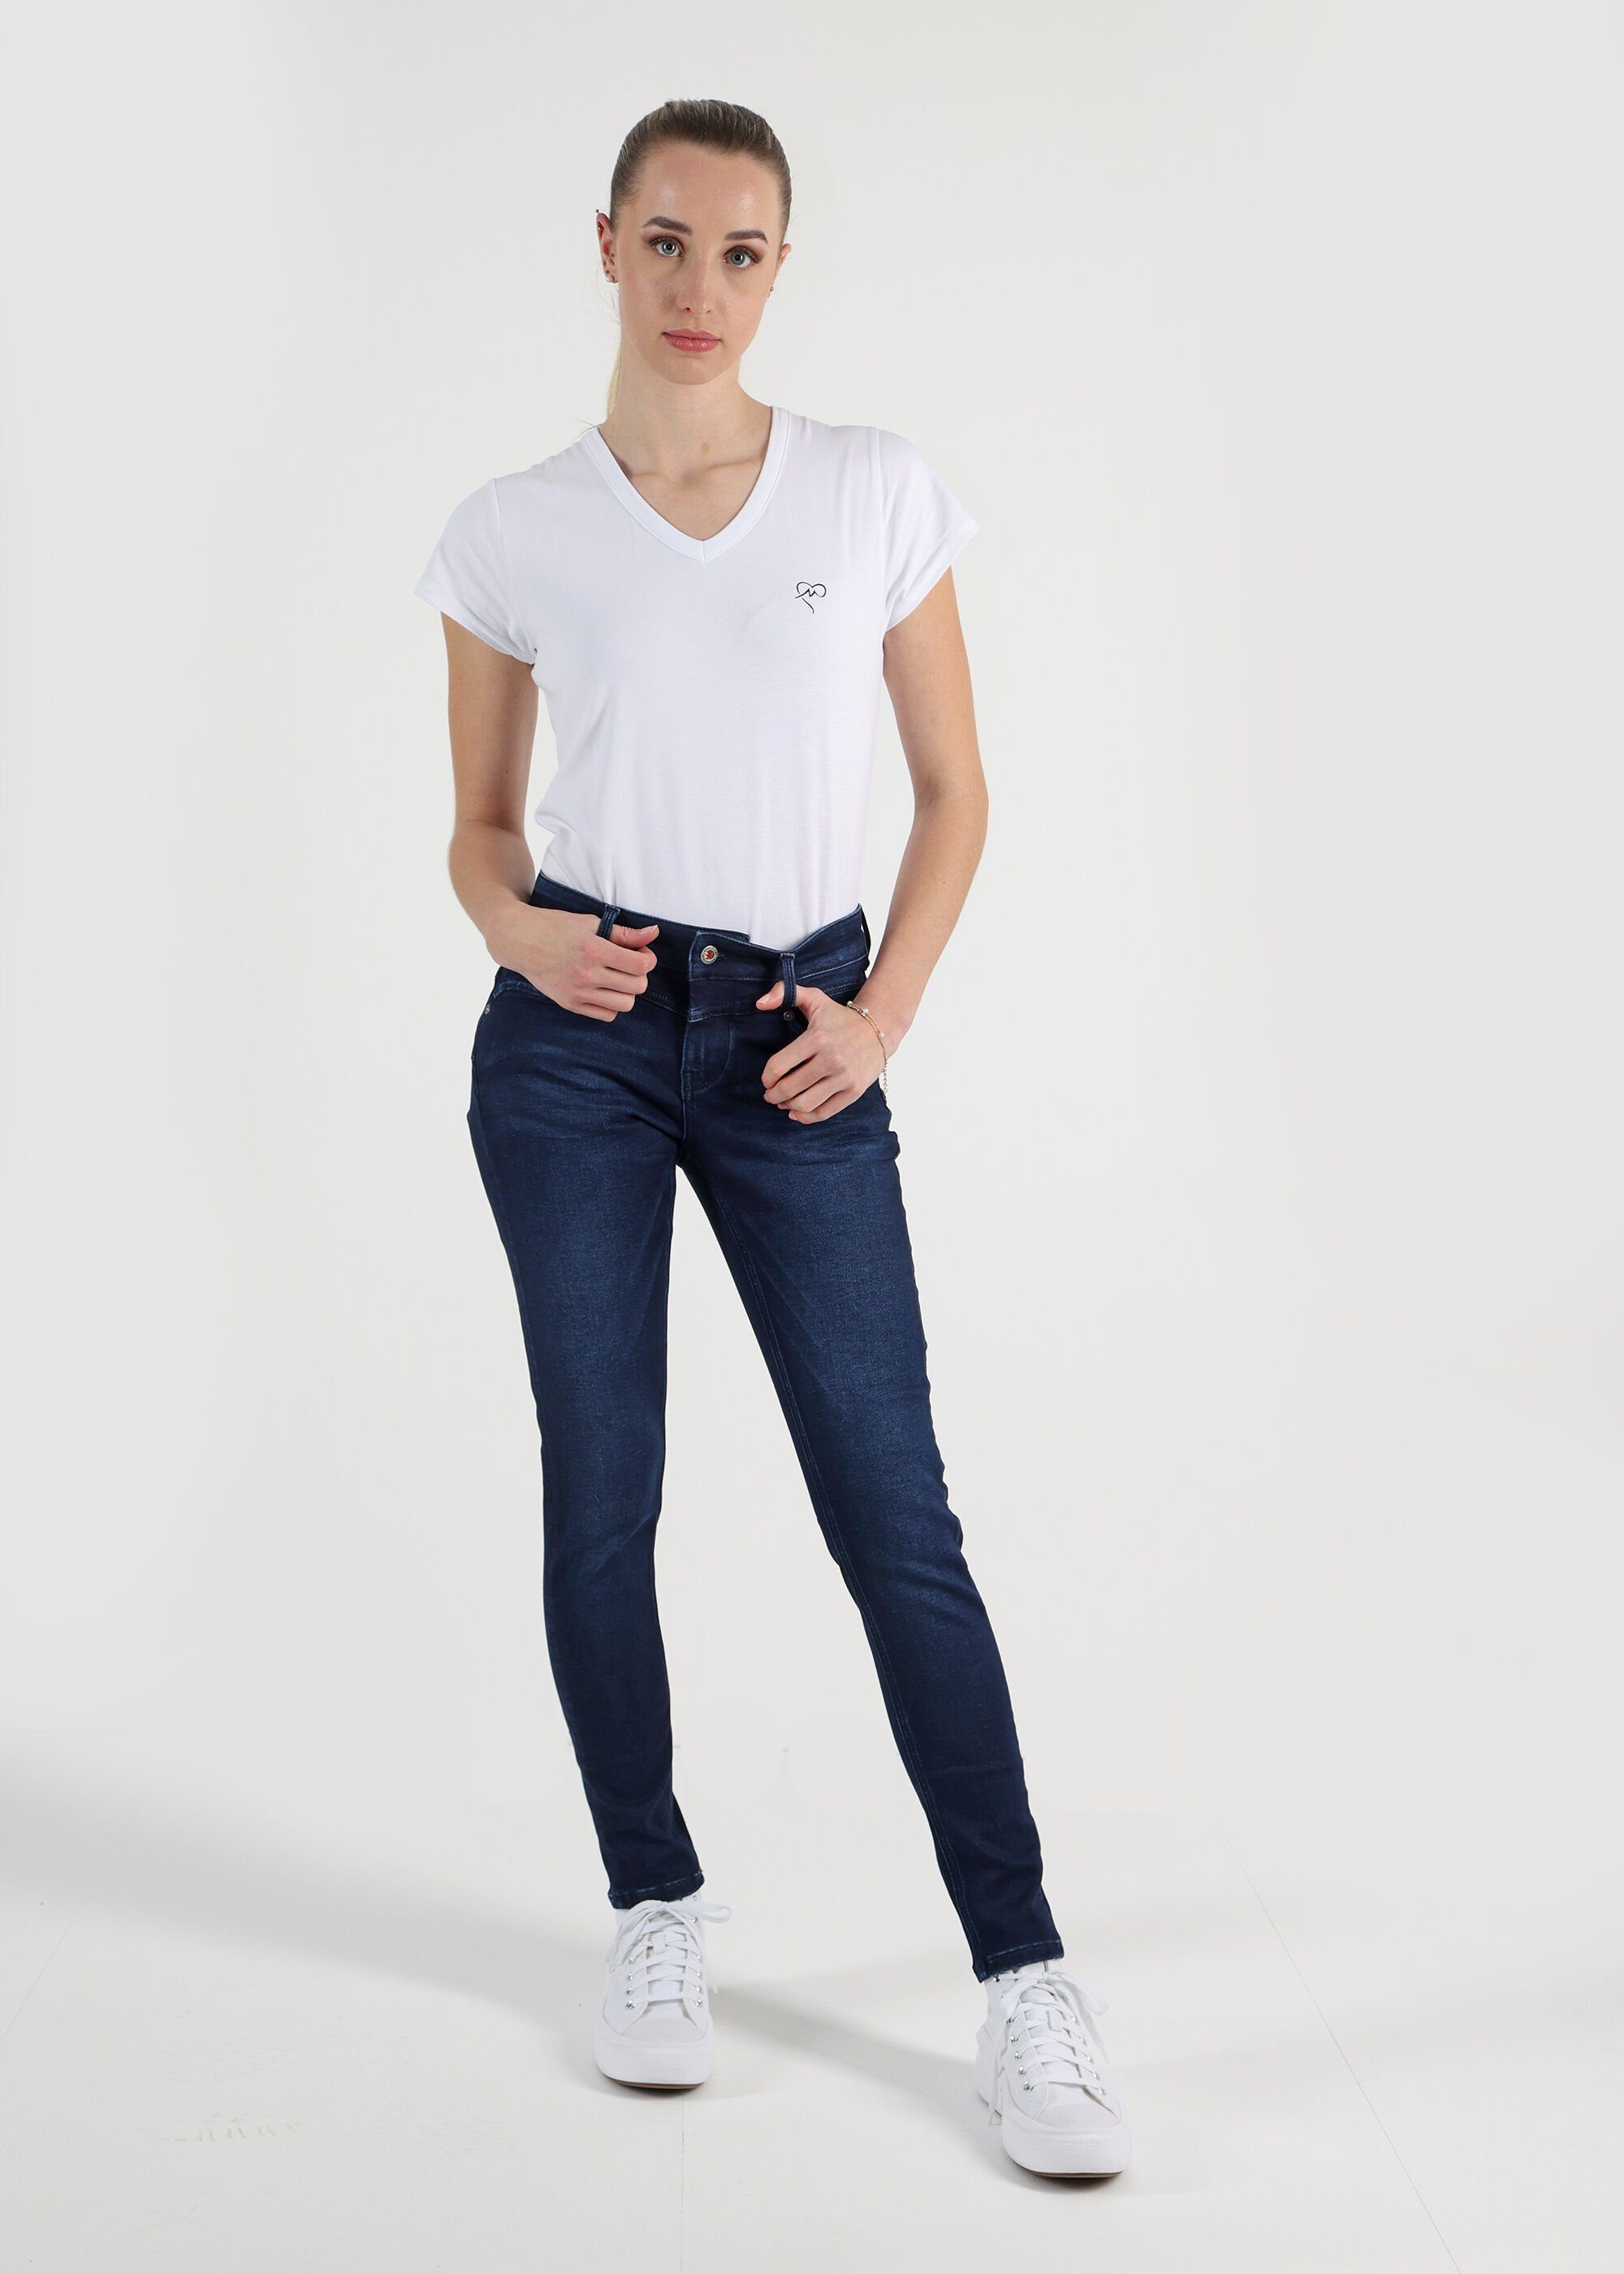 Miracle of Blue J Stretchy Denim Look im Skinny-fit-Jeans Ellen 3678 Used